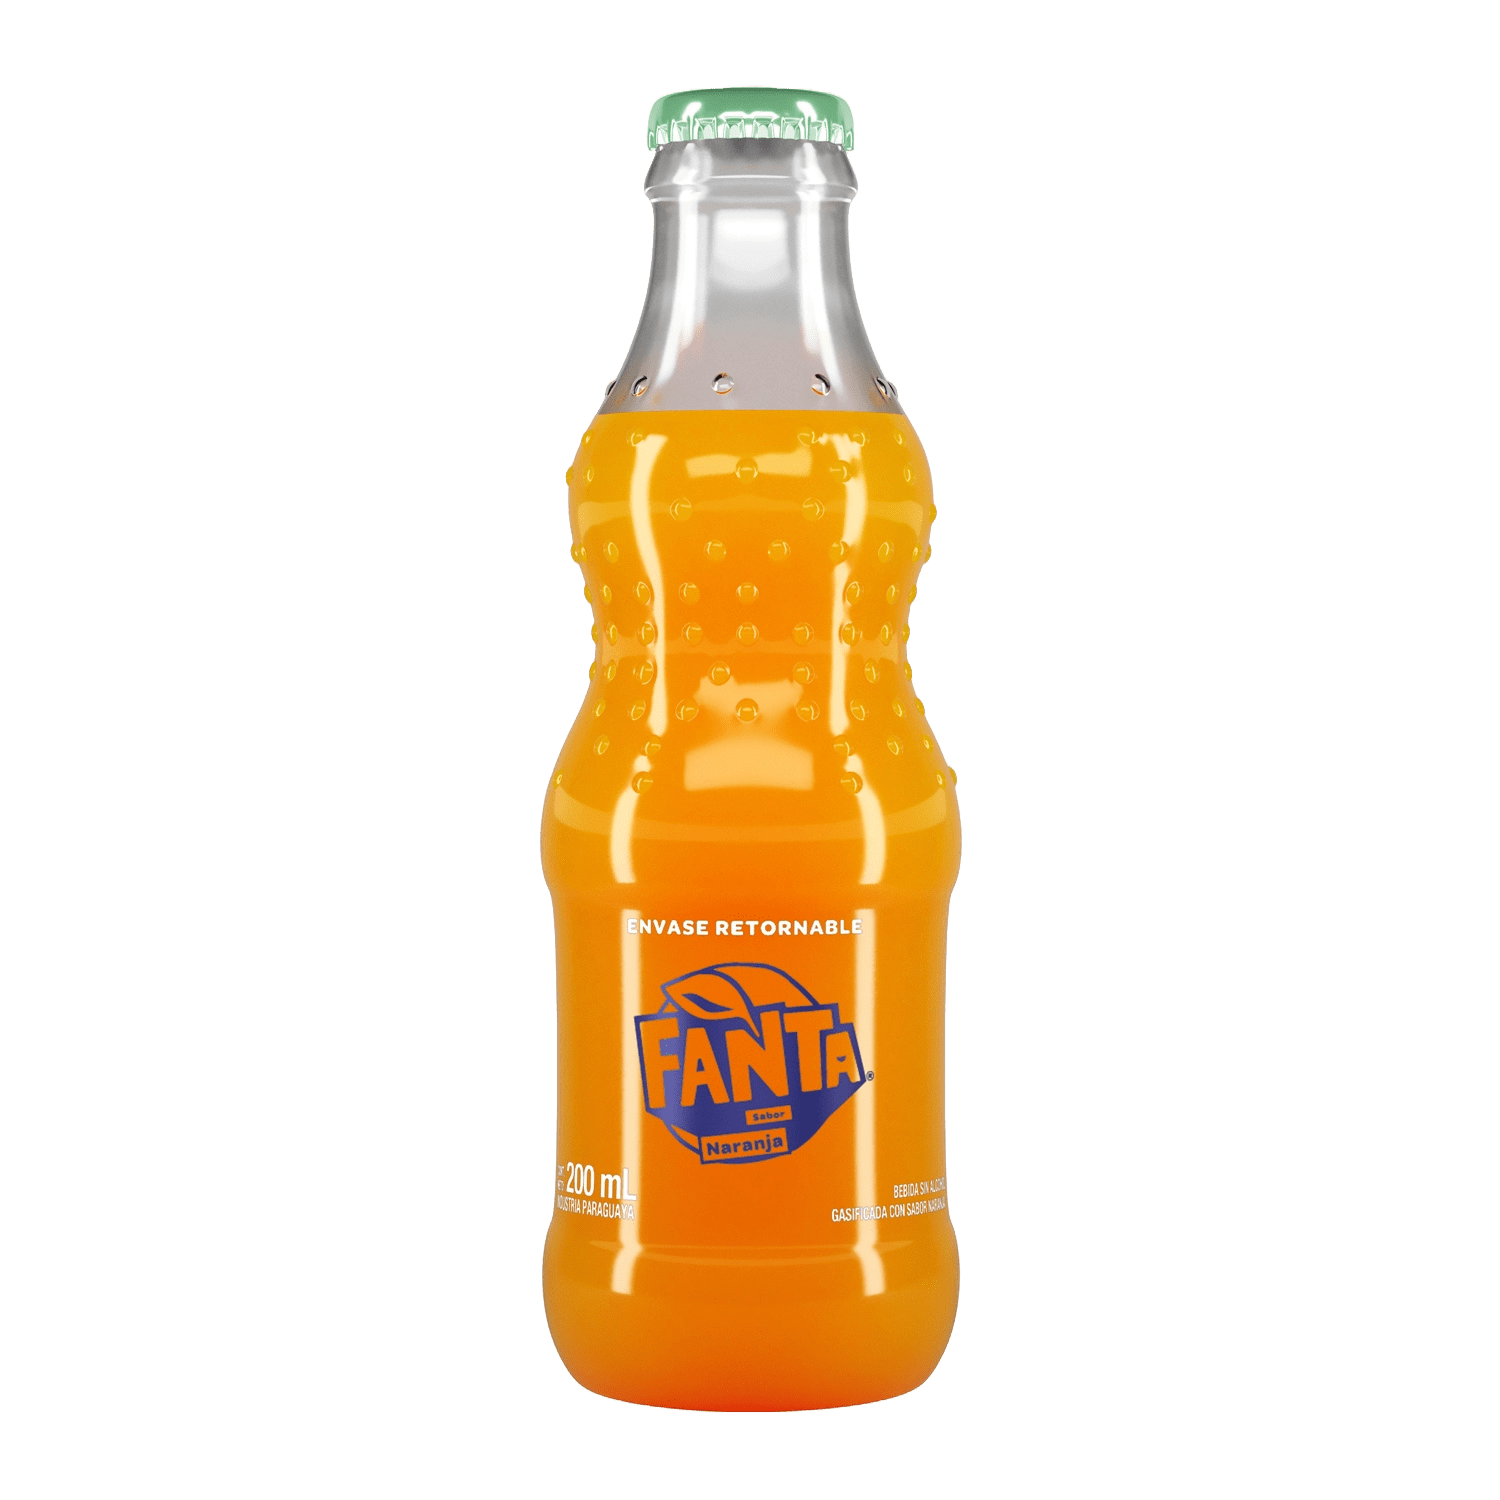 Botella de Fanta Sabor Naranja 200 mL Retornable